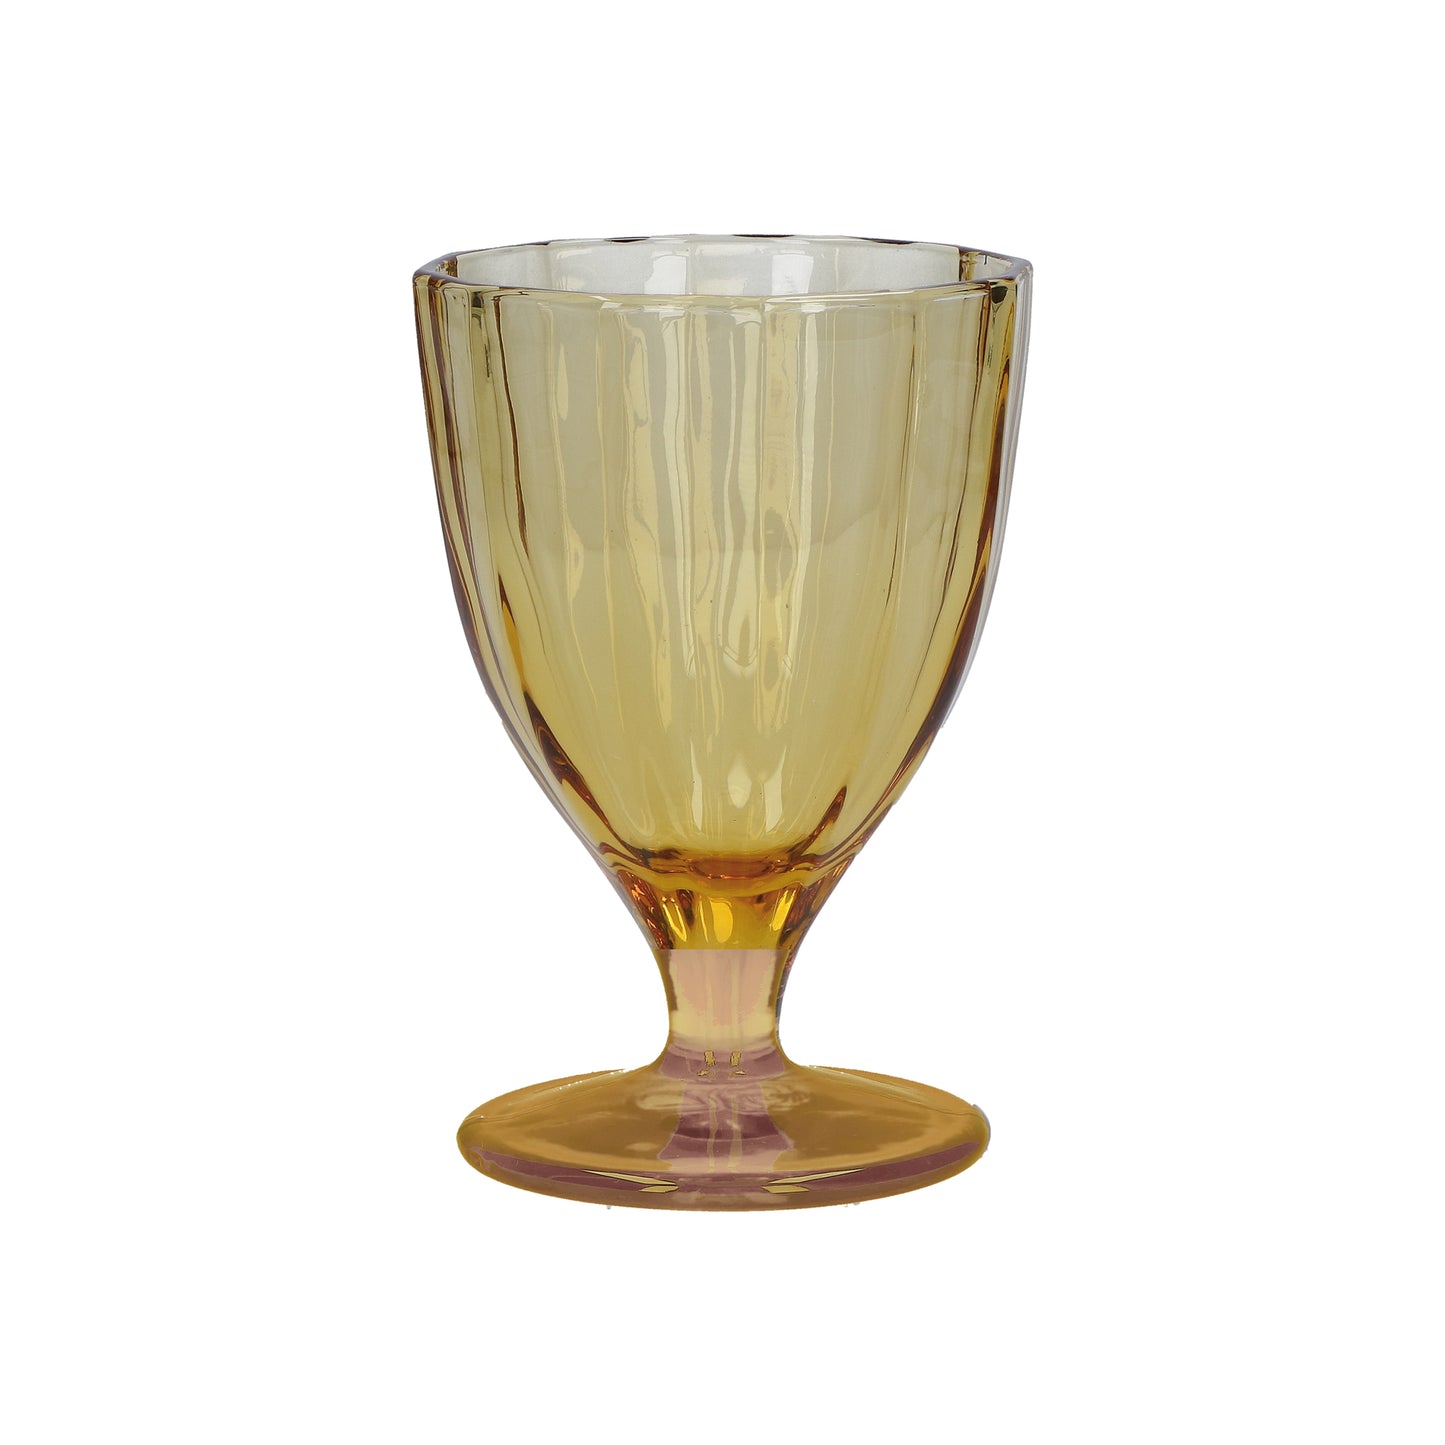 Confezione 6 calici in vetro ambra cc 300 - Ø 8,5 - h 13 cm. Lavabili in lavastoviglie. In negozio e online su tuttochic.it